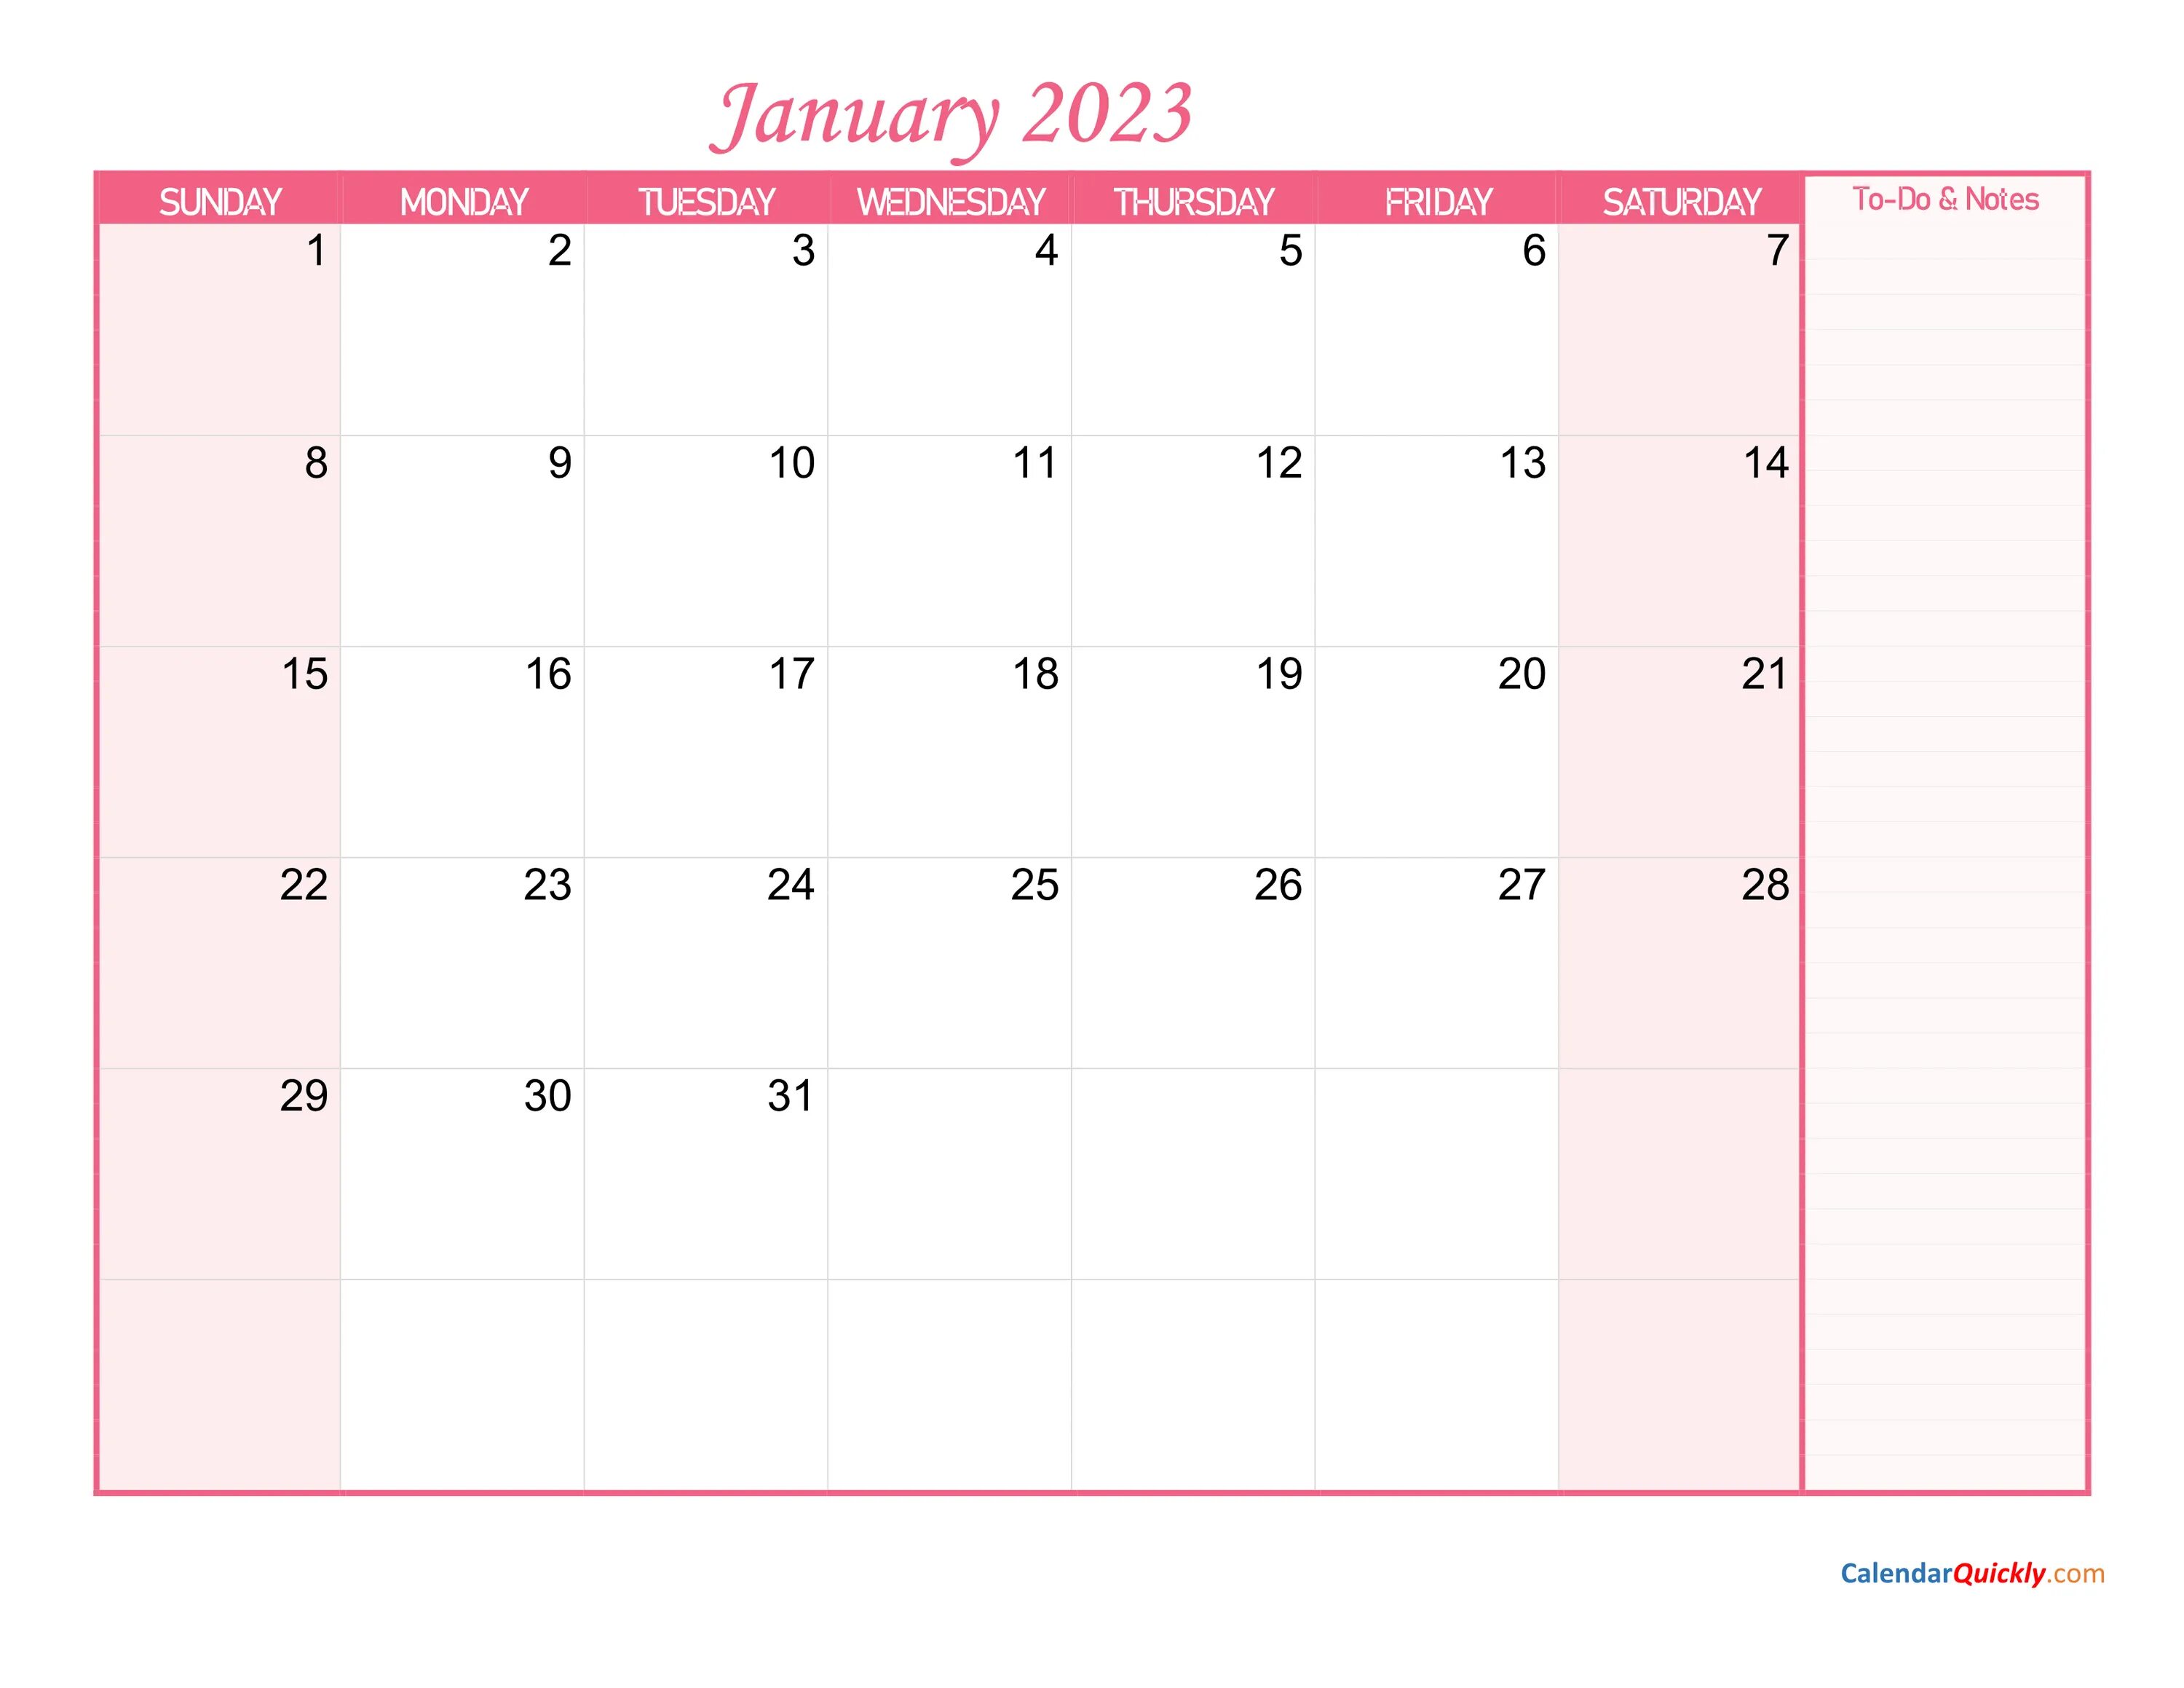 Календарь на ноябрь 2023. Календарь февраль 2022. Календарь 2022 с заметками. Календарь март 2022. Календарь апрель 2022.